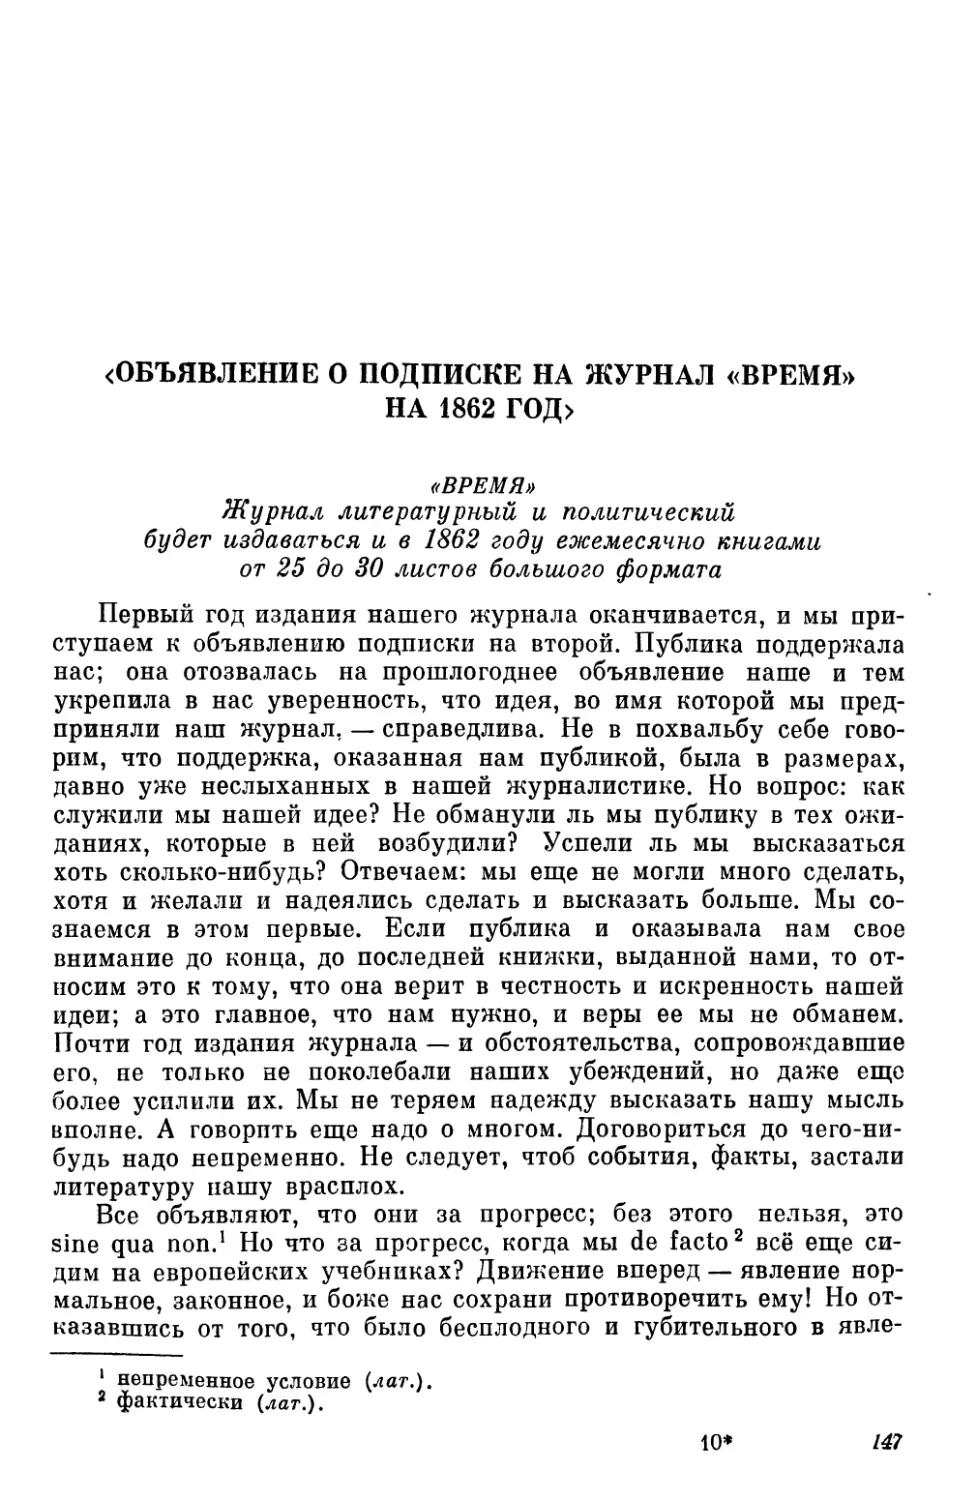 <Объявление о подписке на журнал «Время» на 1862 год»>